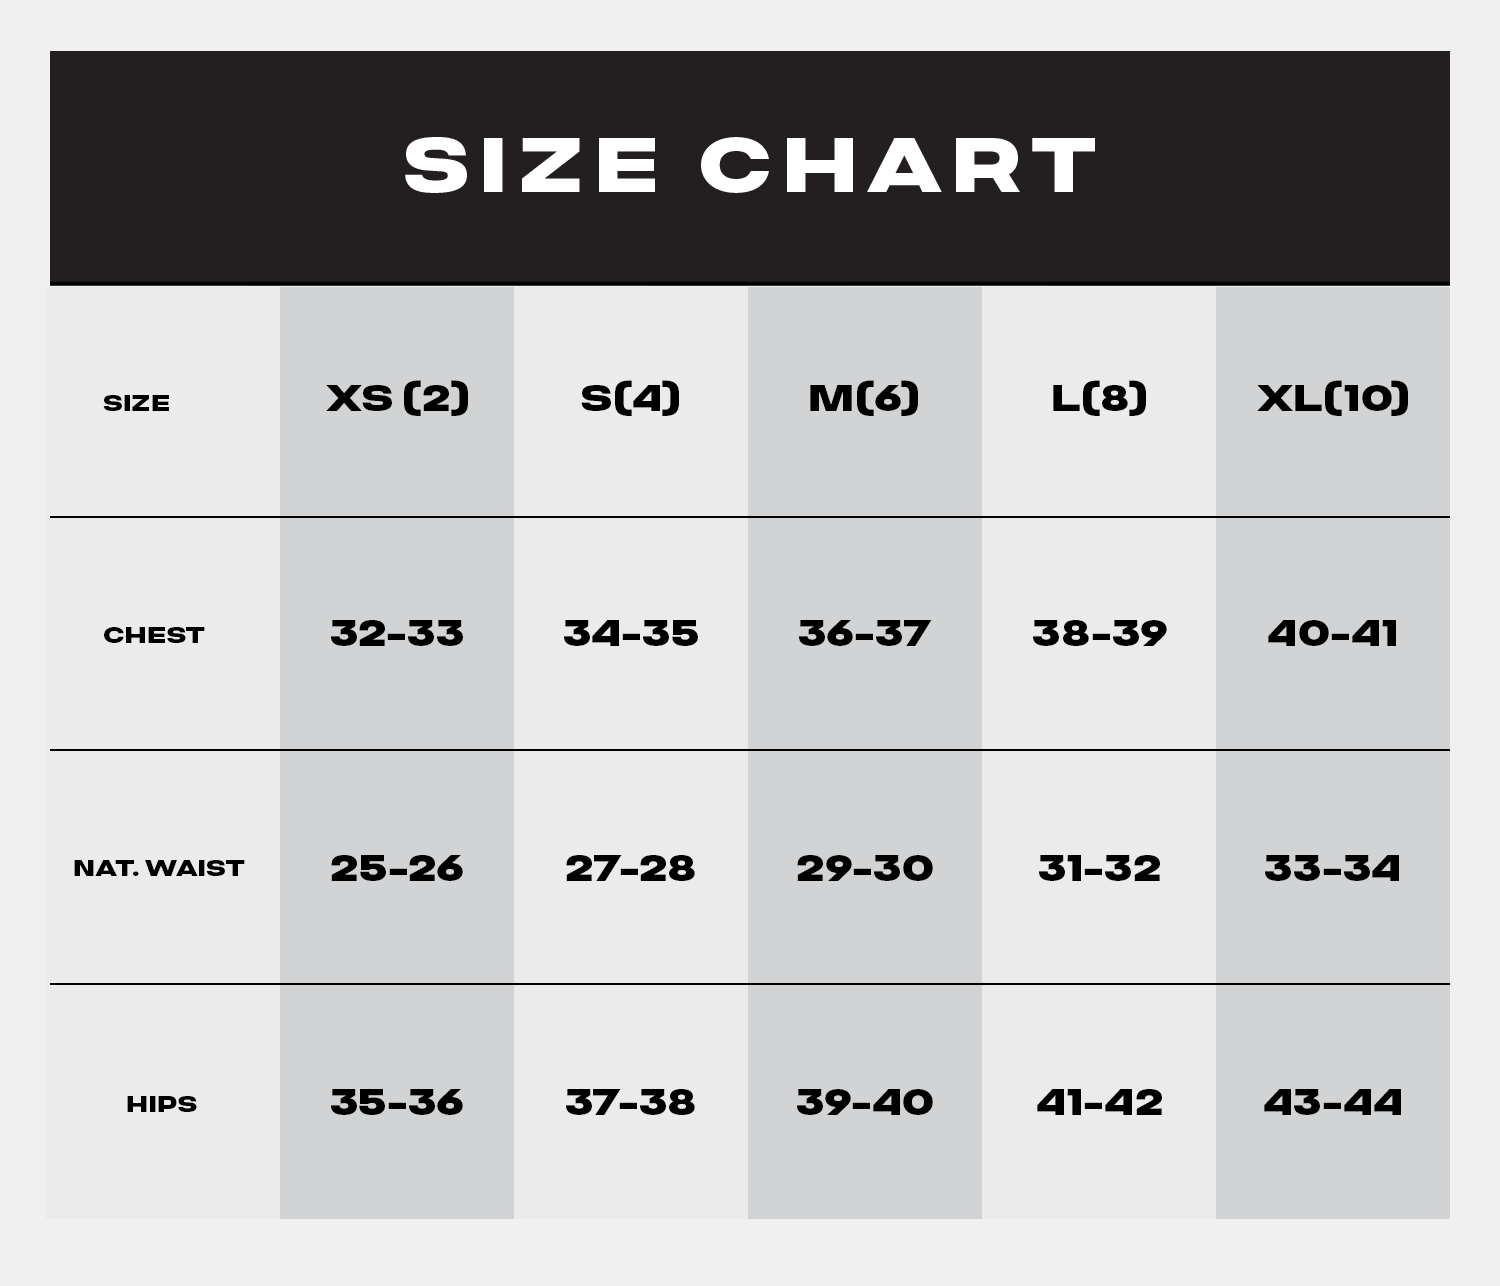 Womens Size Chart